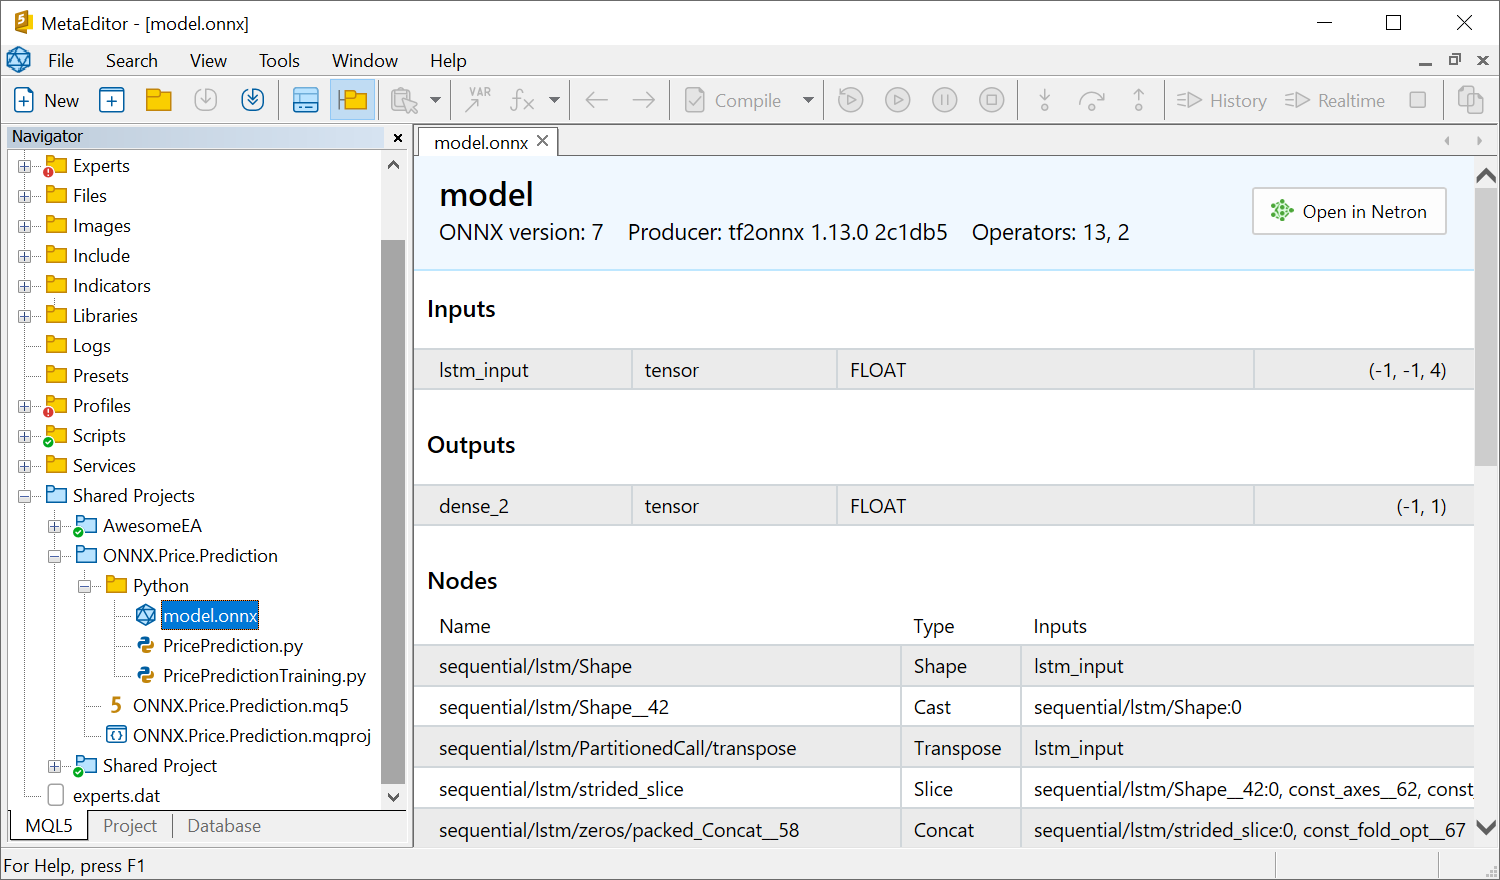 Поддержка ONNX — теперь прямо в редакторе можно видеть различные свойства моделей